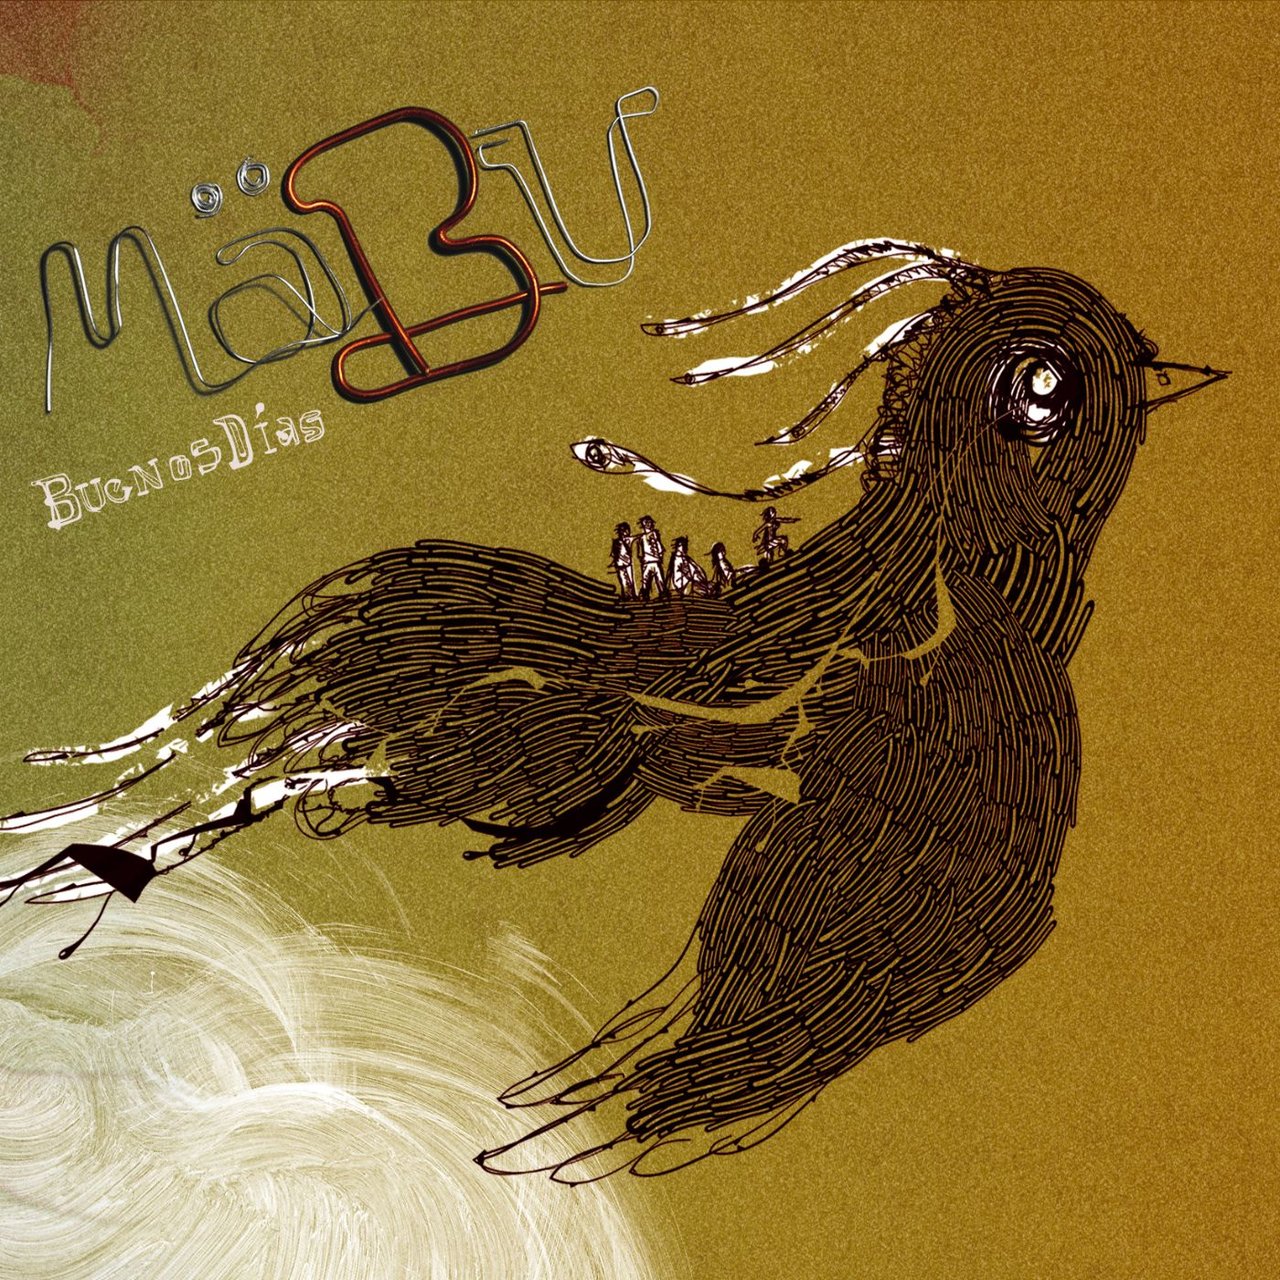 Mäbu — Con mi voz cover artwork